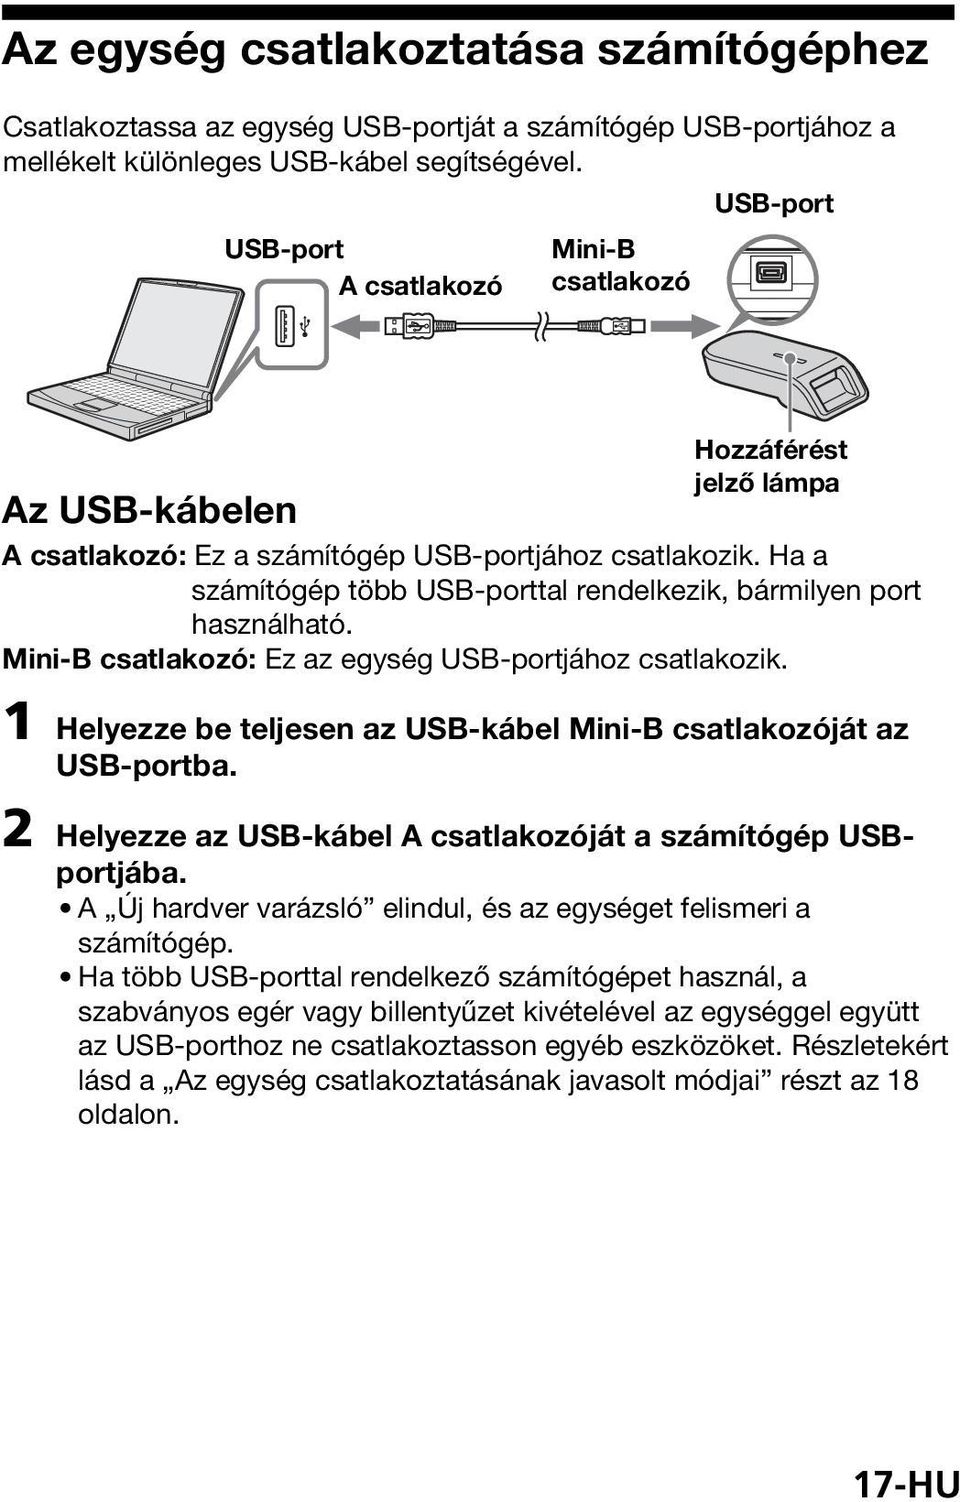 Ha a számítógép több USB-porttal rendelkezik, bármilyen port használható. Mini-B csatlakozó: Ez az egység USB-portjához csatlakozik.